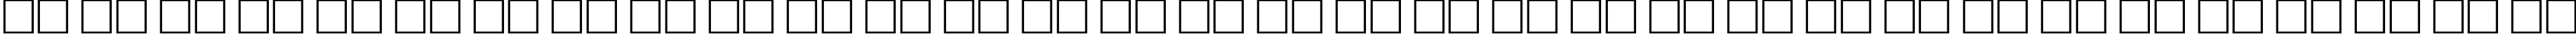 Пример написания русского алфавита шрифтом Antiqua 60B